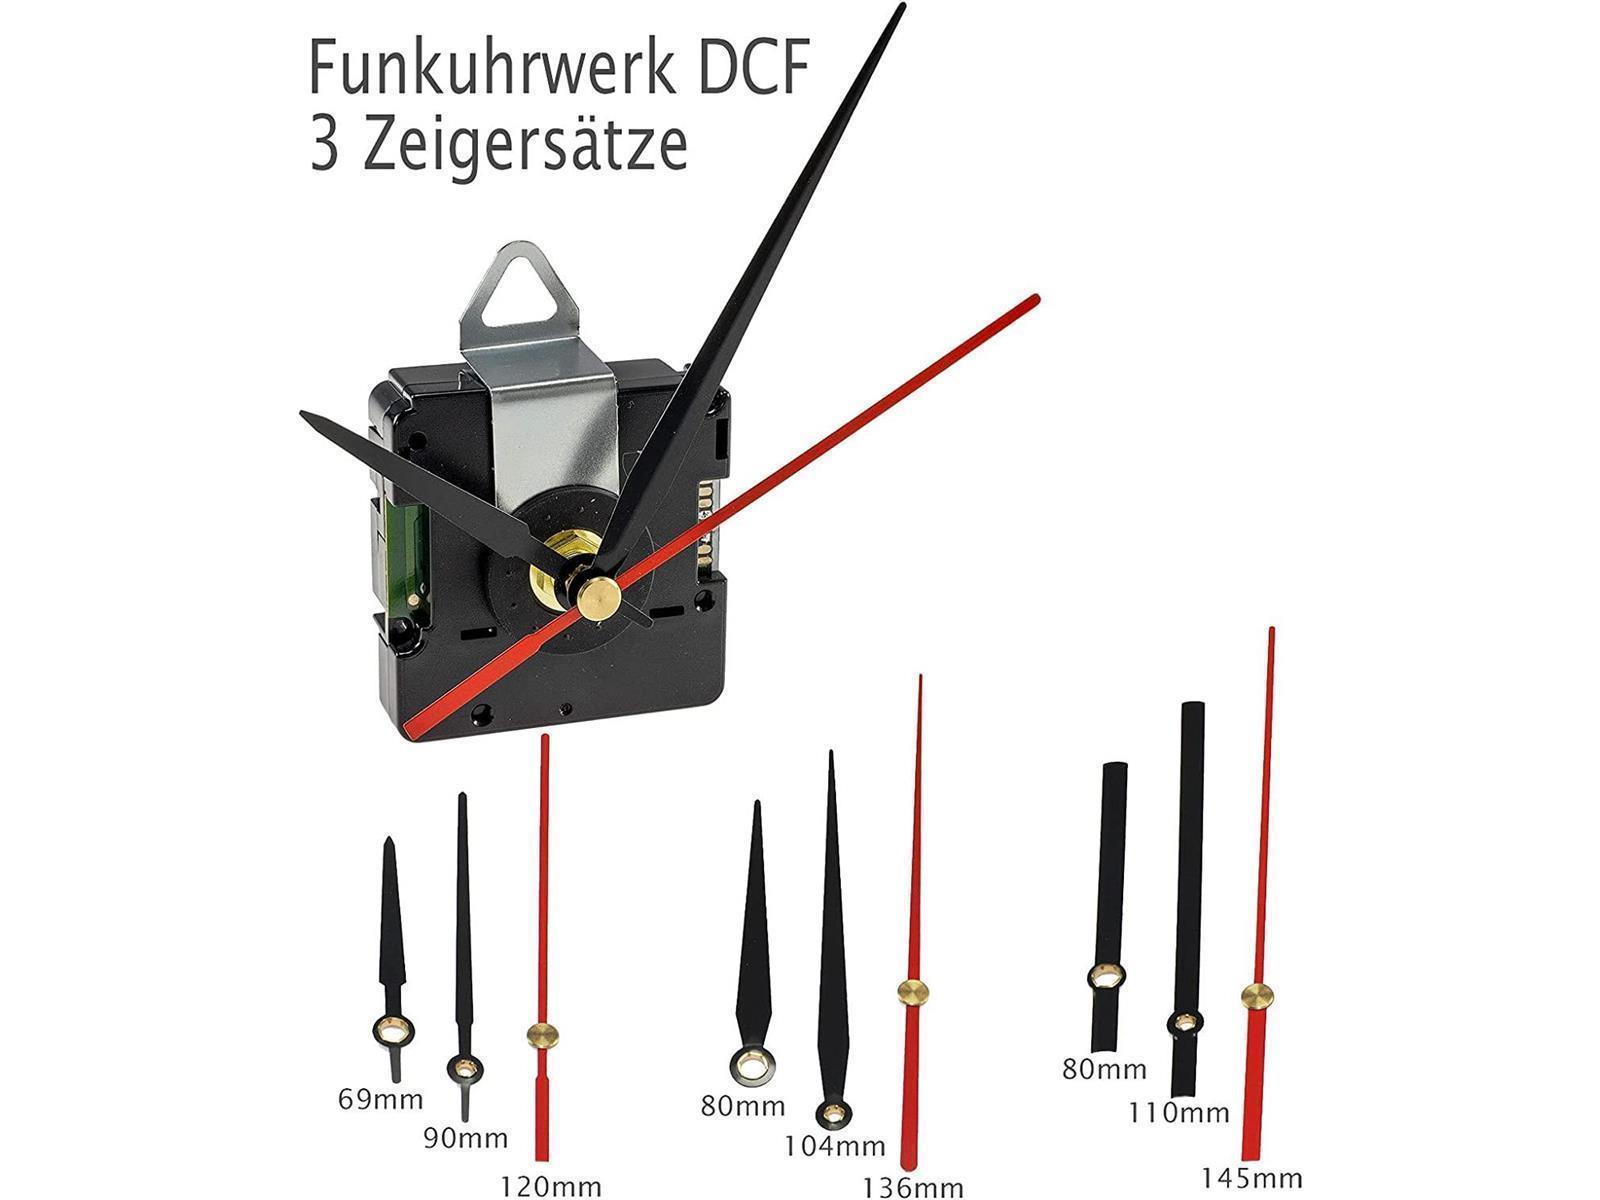 Funkuhrwerk DCF mit 3 Zeigersätzenaus Kunststoff